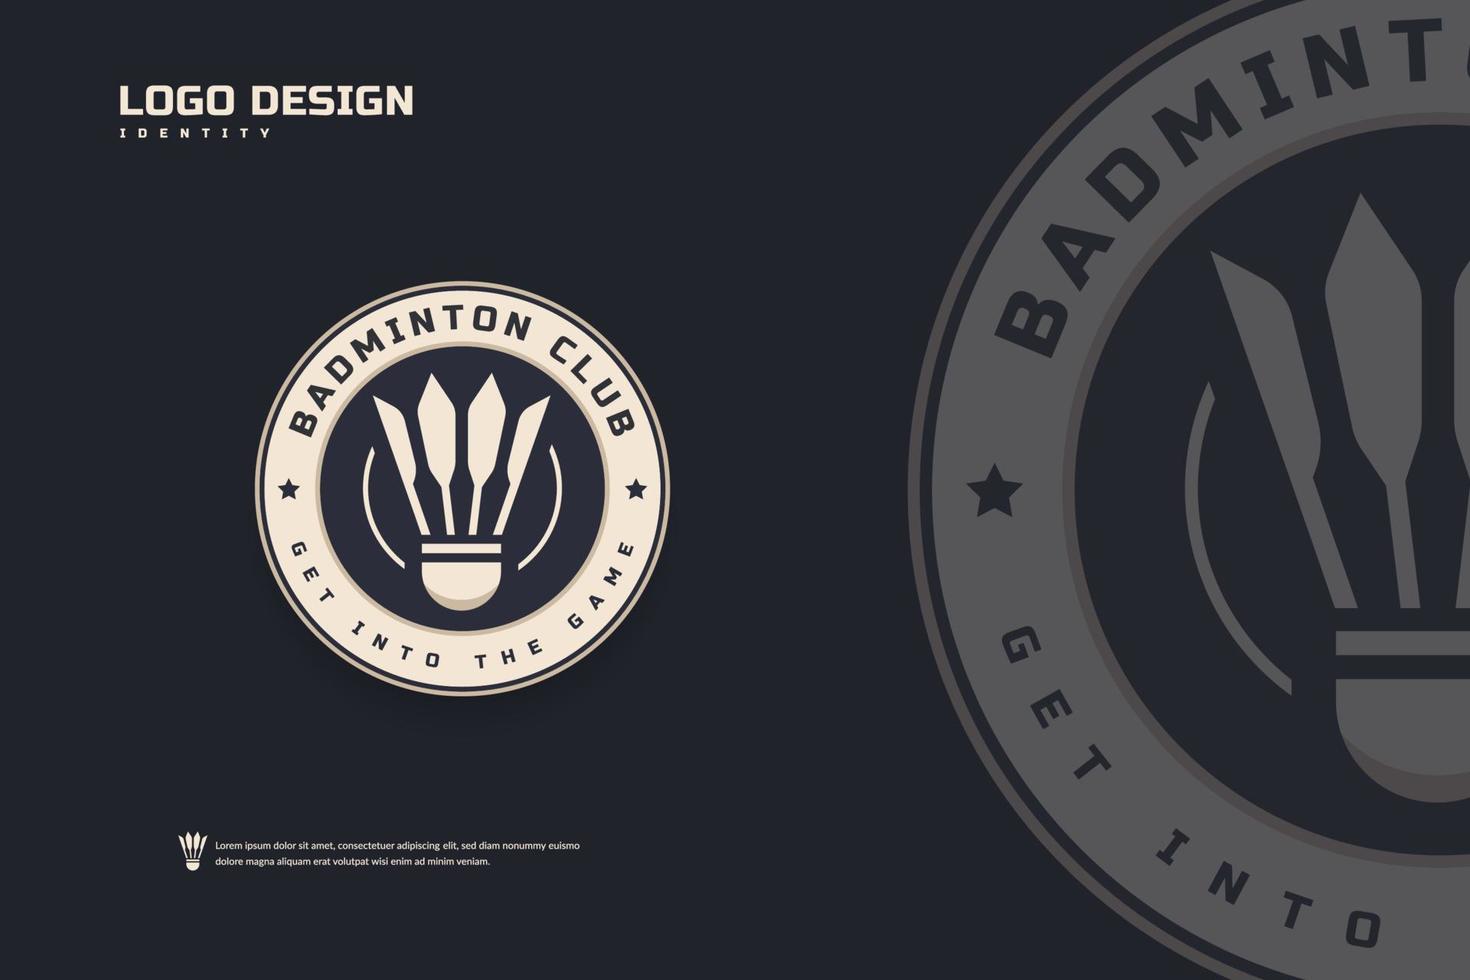 logotipo del club de bádminton, plantilla de emblemas del torneo de bádminton. identidad del equipo deportivo, ilustraciones de vectores de diseño de distintivos abstractos